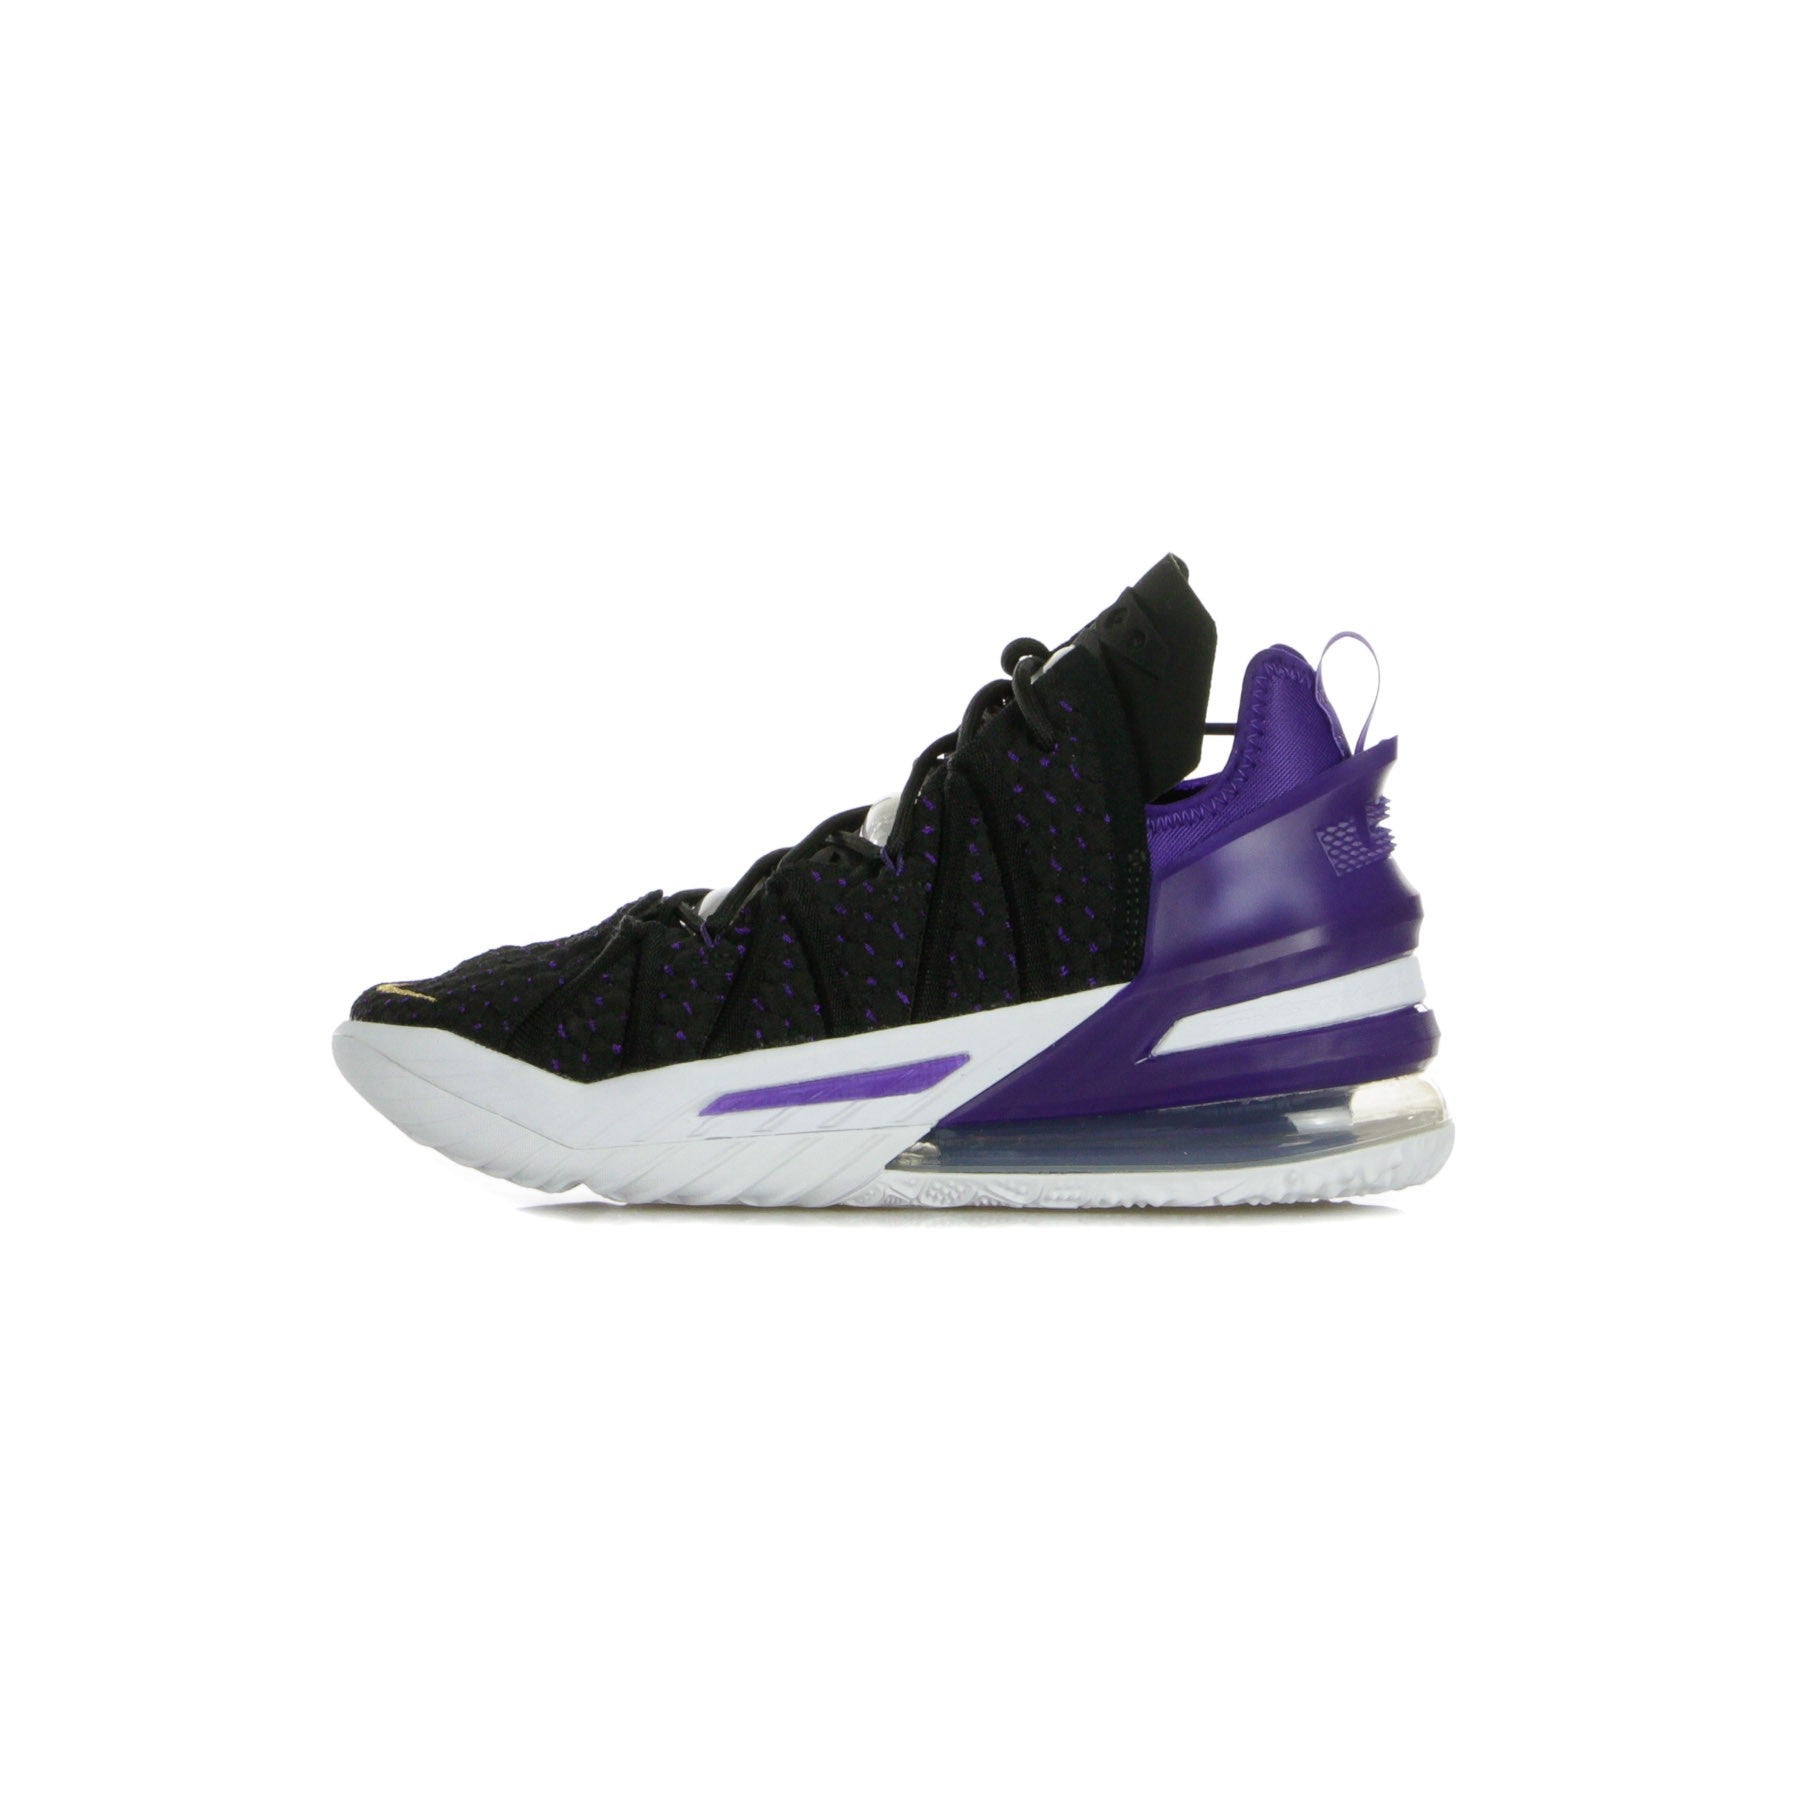 Nike Nba, Scarpa Alta Uomo Lebron Xviii, Black/metallic Gold/court Purple/white